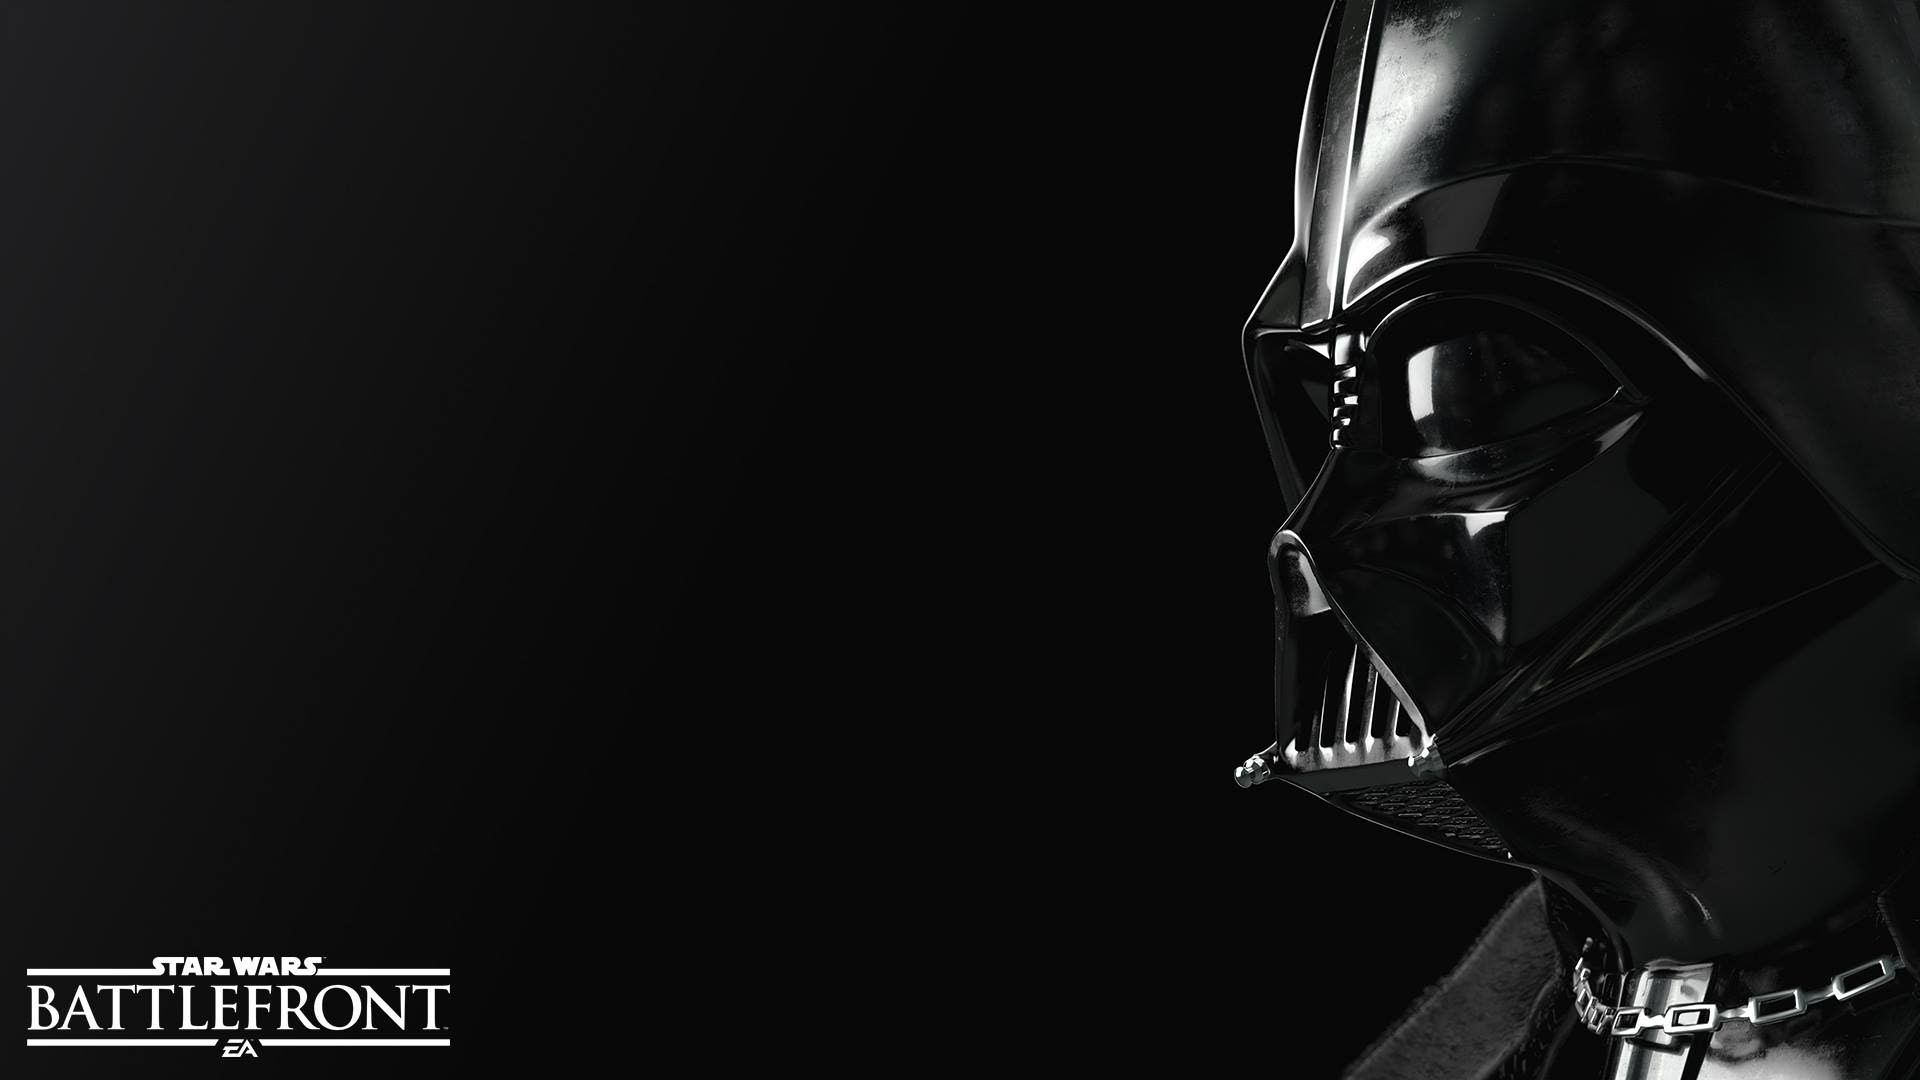 Star Wars Battlefront Wallpaper Darth Vader - HD Wallpaper 